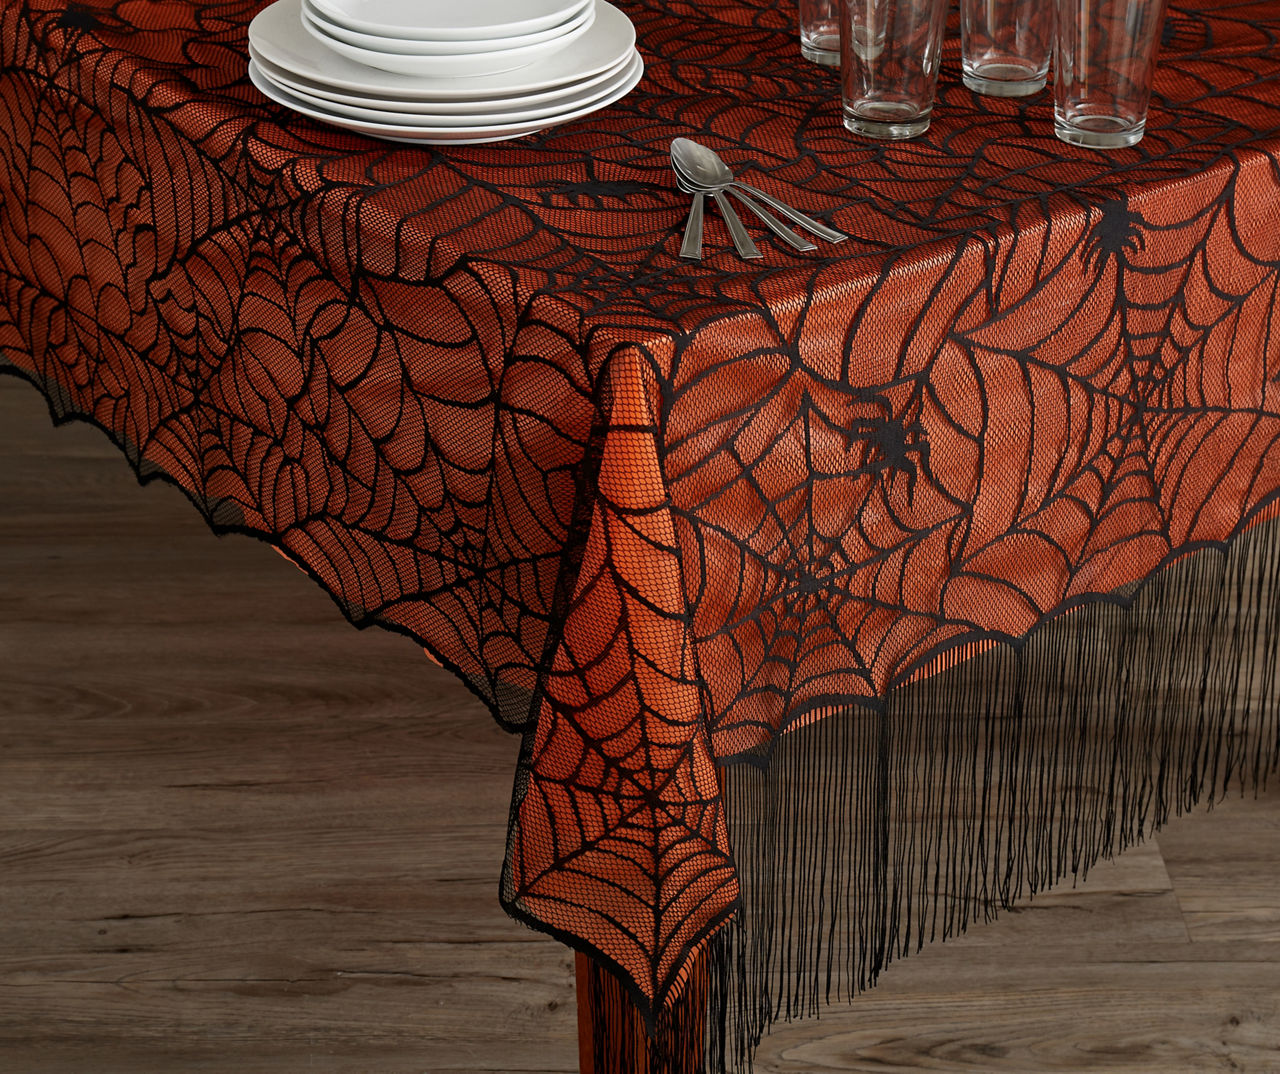 Black Spider Web Fringe-Trim Lace Tablecloth With Orange PEVA Liner, (52" x 70")